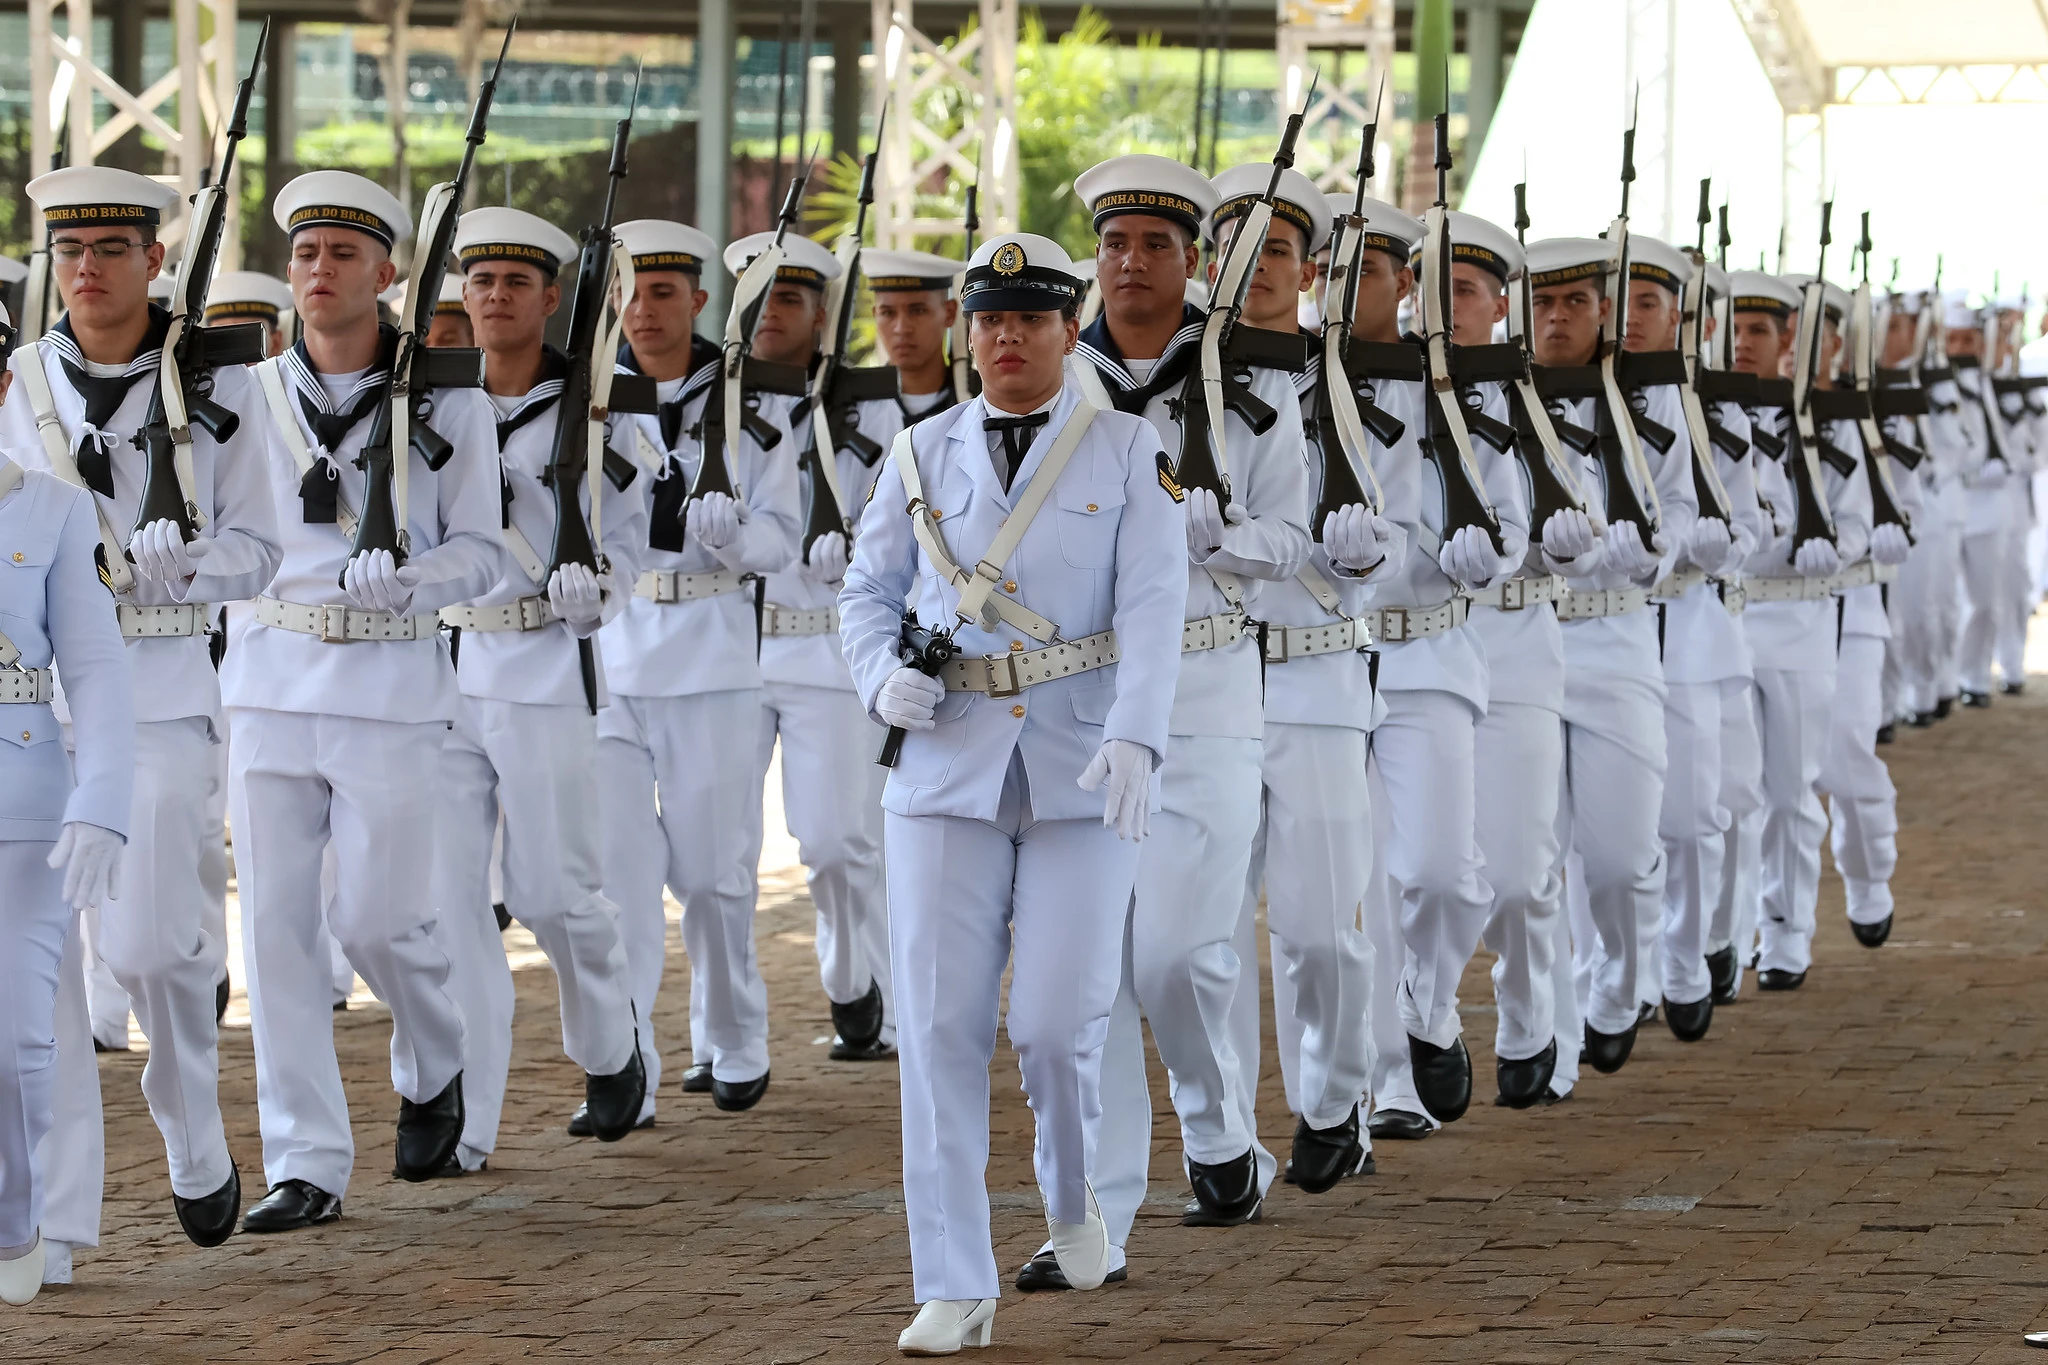 Marinha do Brasil está com 686 INSCRIÇÕES ABERTAS em Concurso para Aprendiz  de Marinheiro. VEJA! - Classificados de Emprego